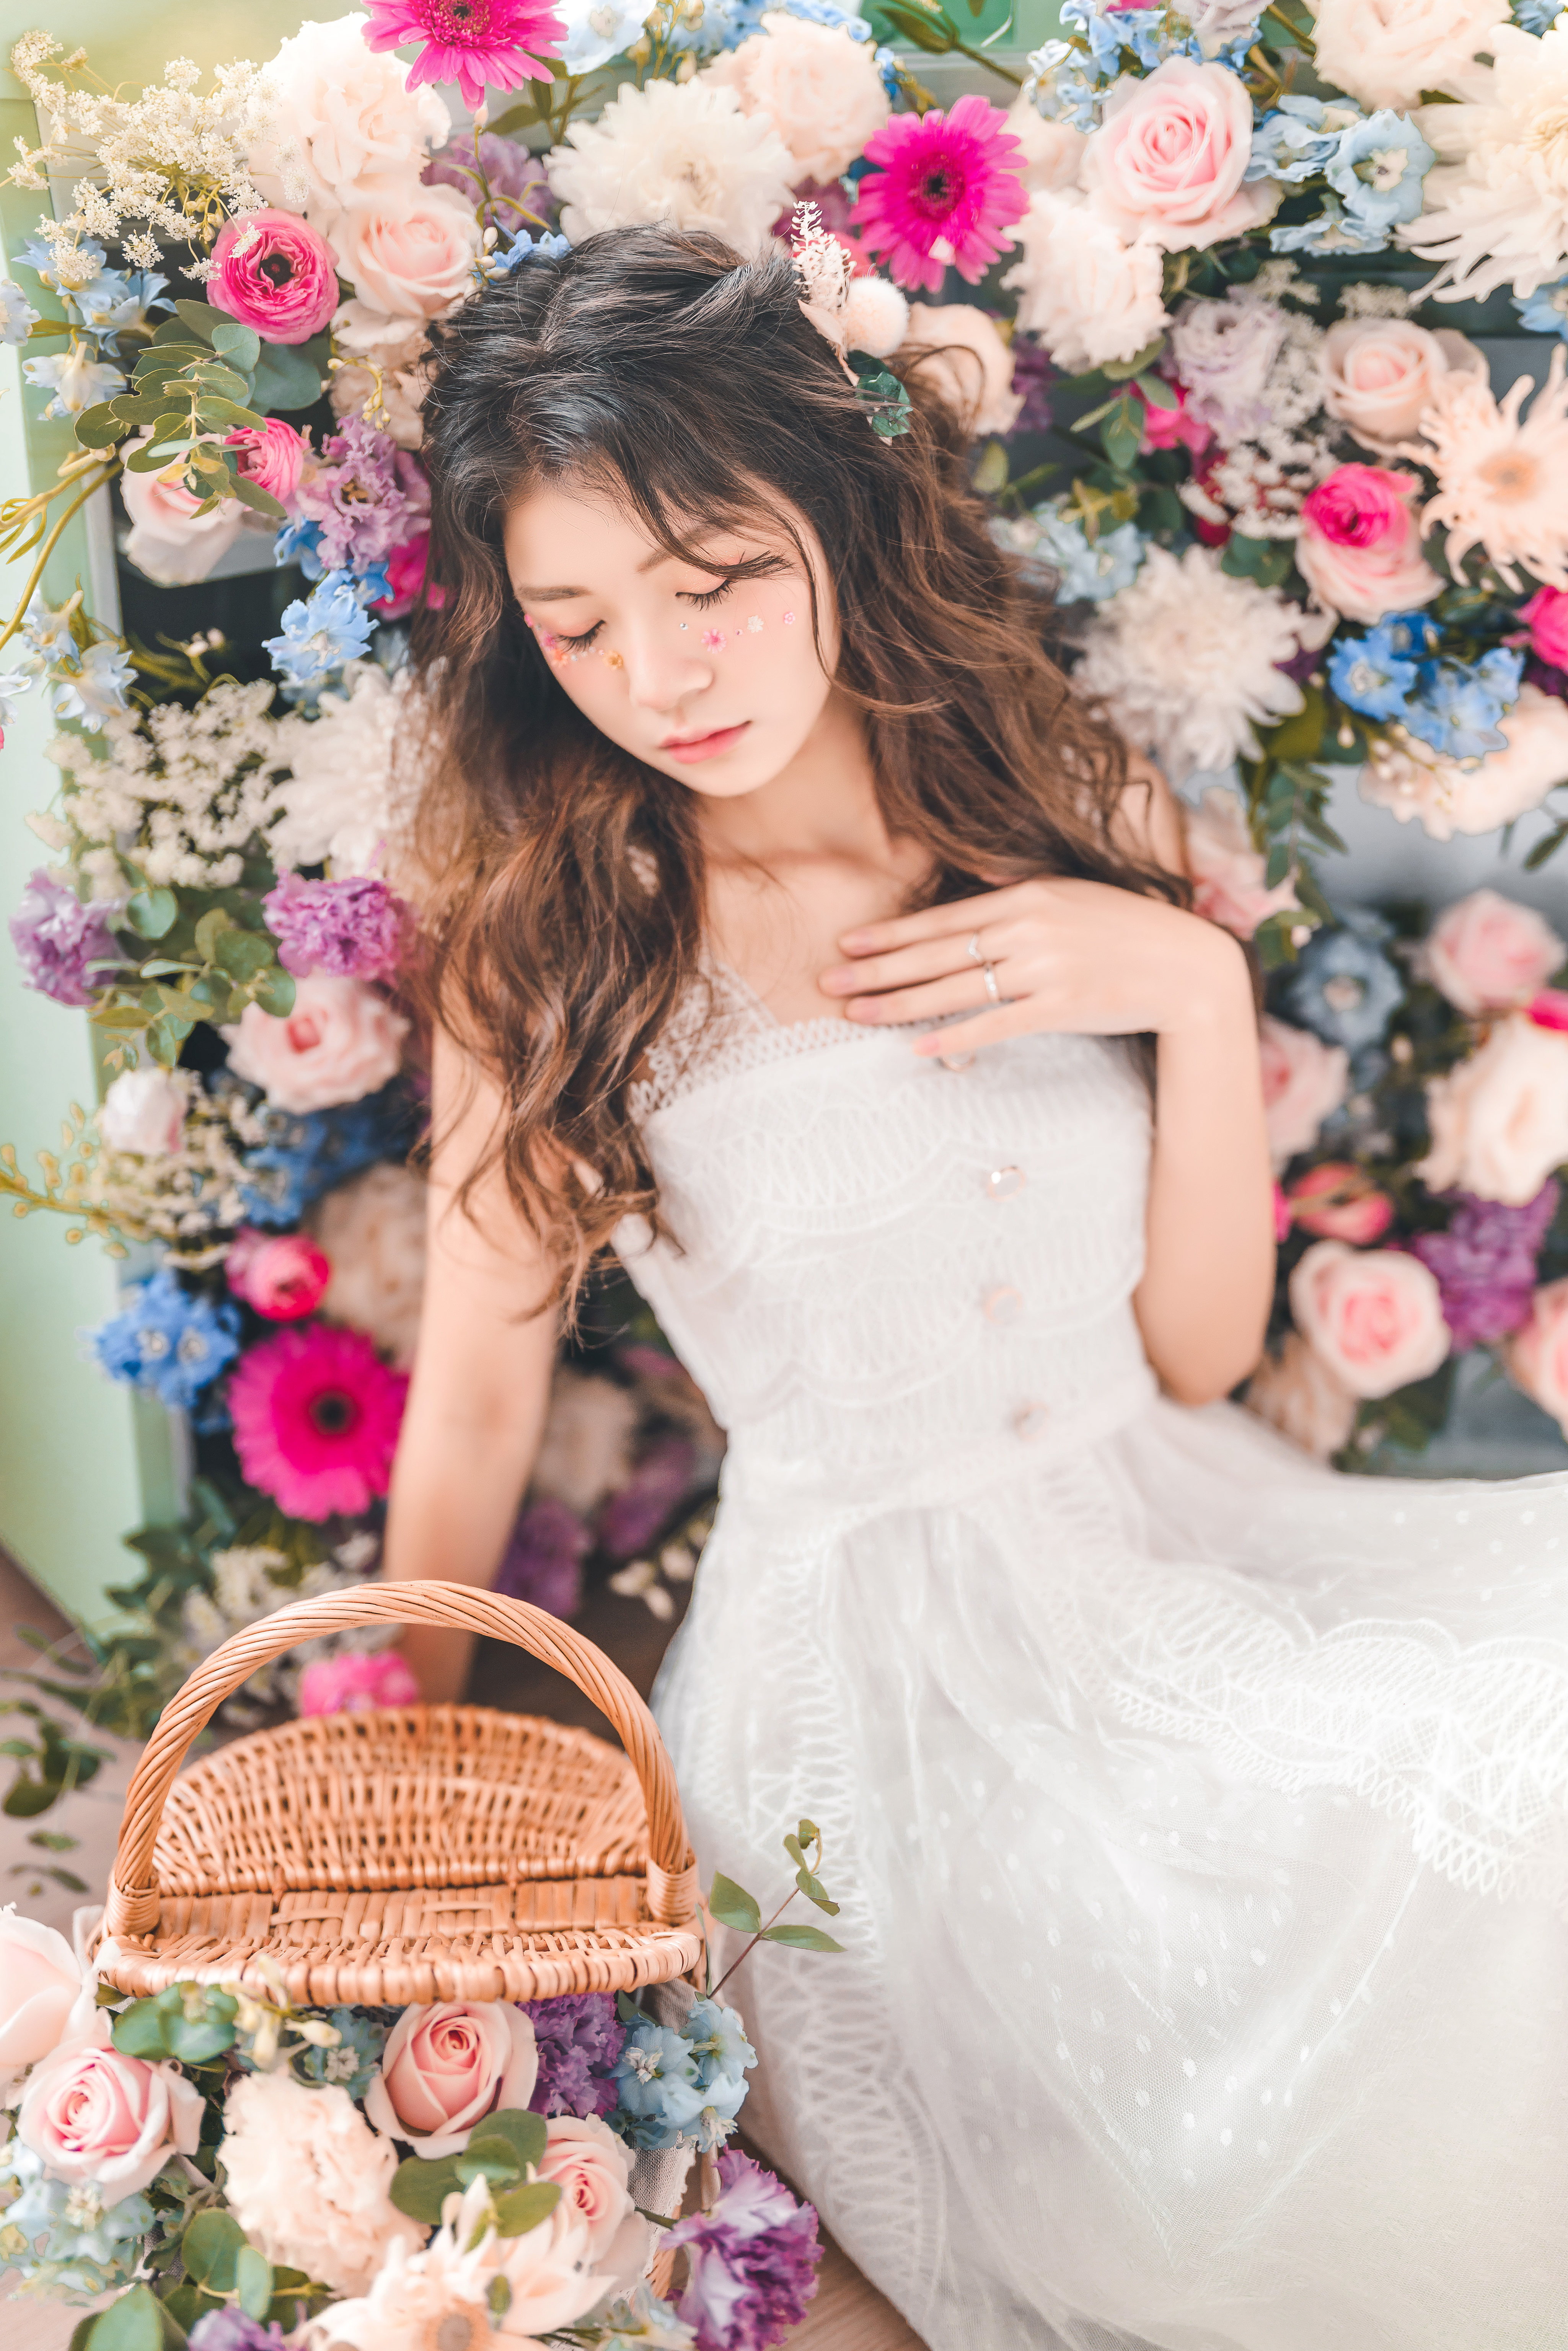 Asian Women Model Brunette Flowers Plants Closed Eyes Baskets Long Hair White Dress Dress White Clot 4098x6144